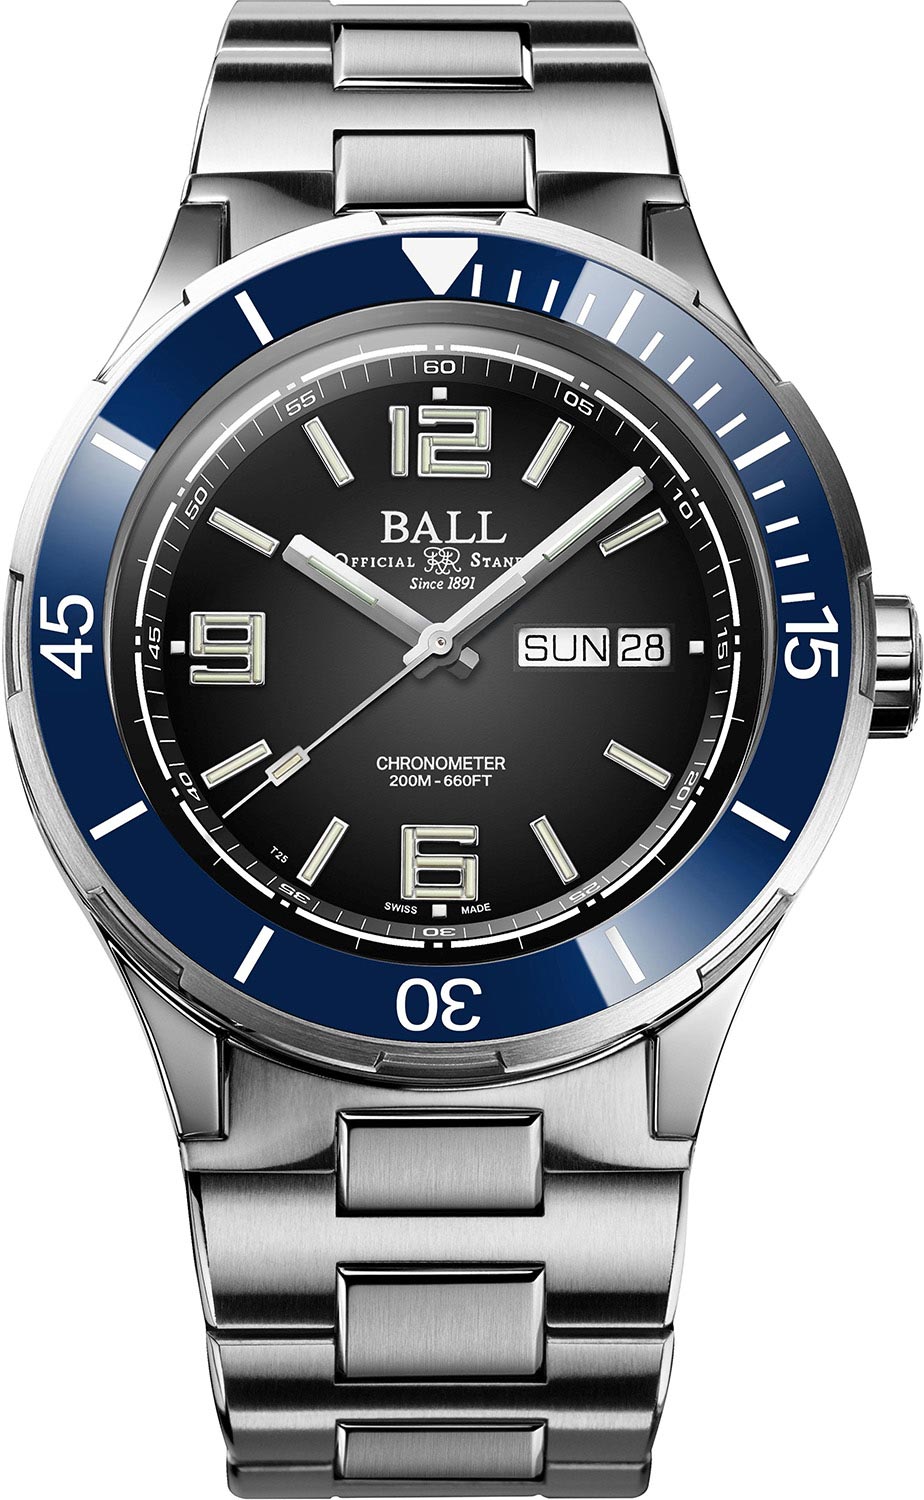     BALL DM3030B-S13CJ-BK